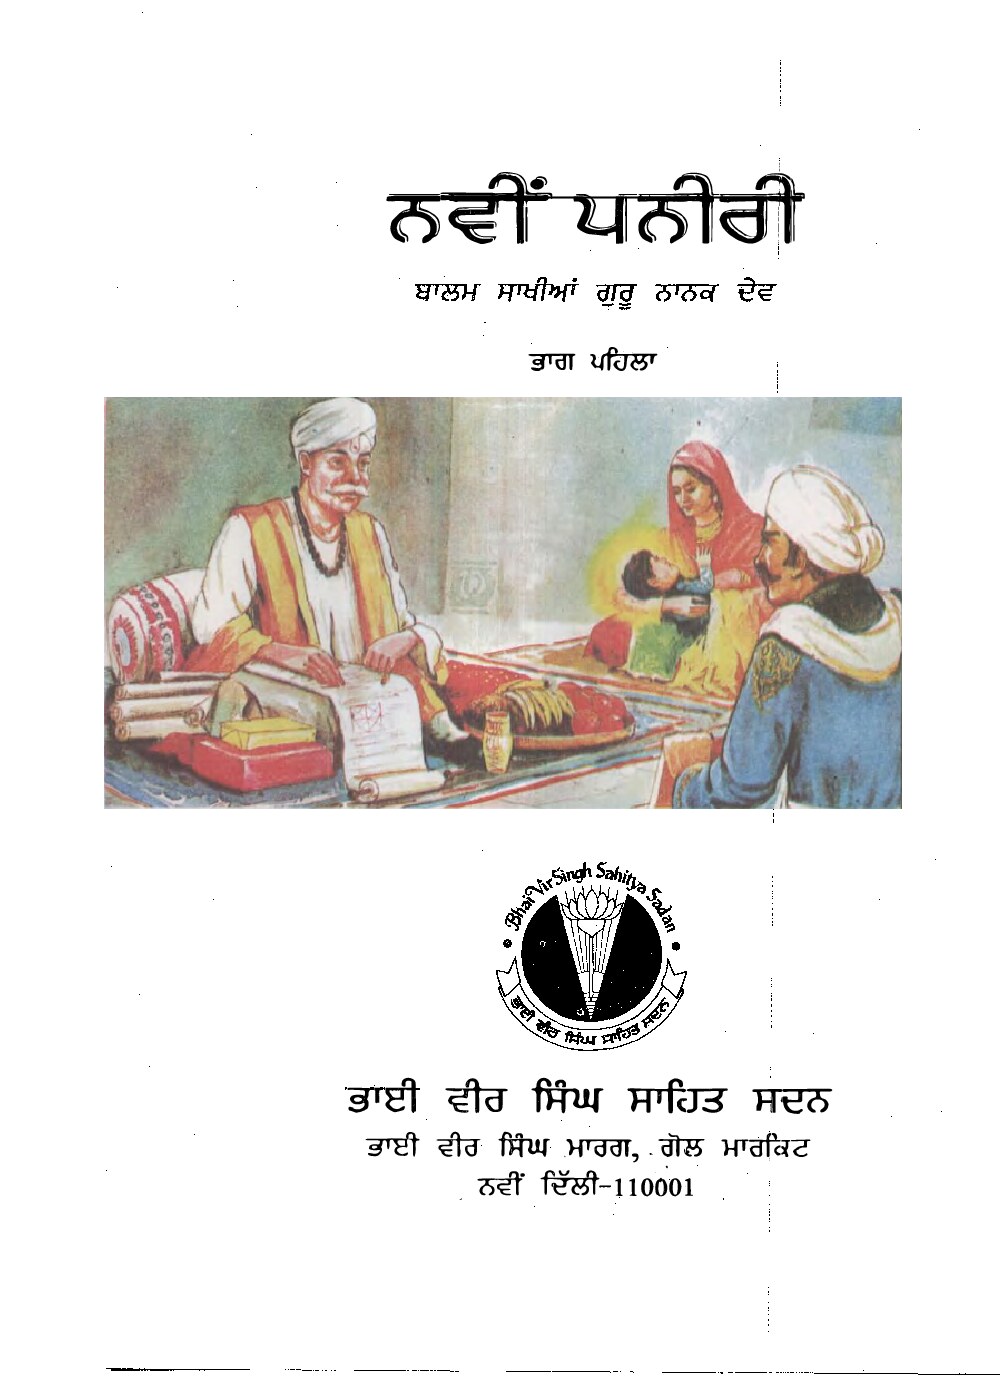 ਨਵੀਂ ਪਨੀਰੀ (ਭਾਗ 1) - Navin Paneeri Guru Nanak Dev Ji (Part 1)